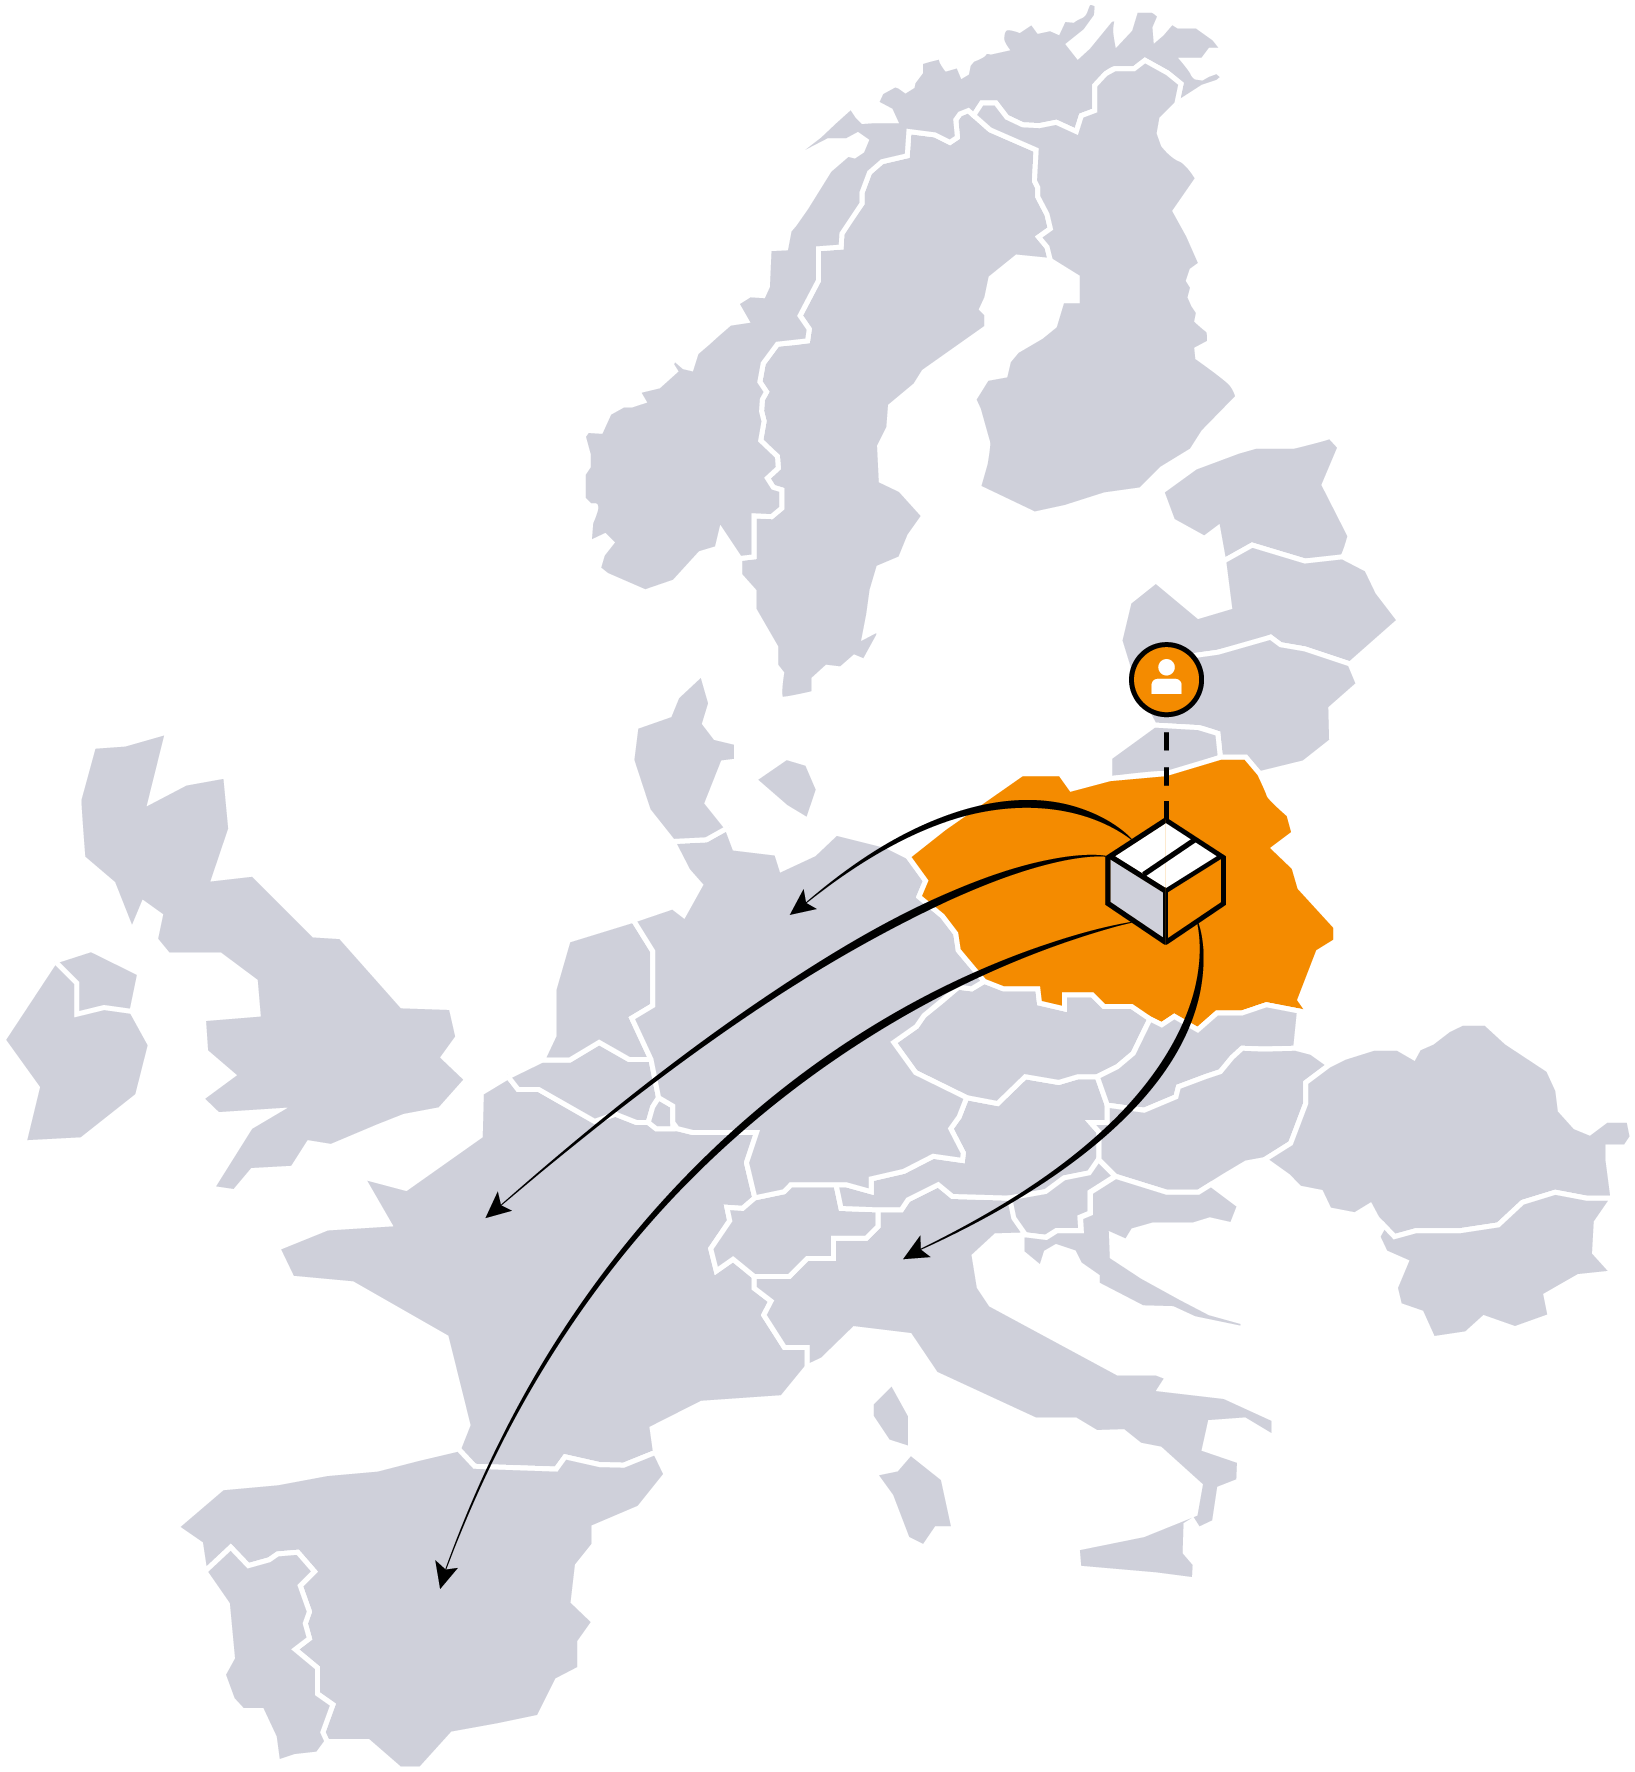 European Fulfilment Network